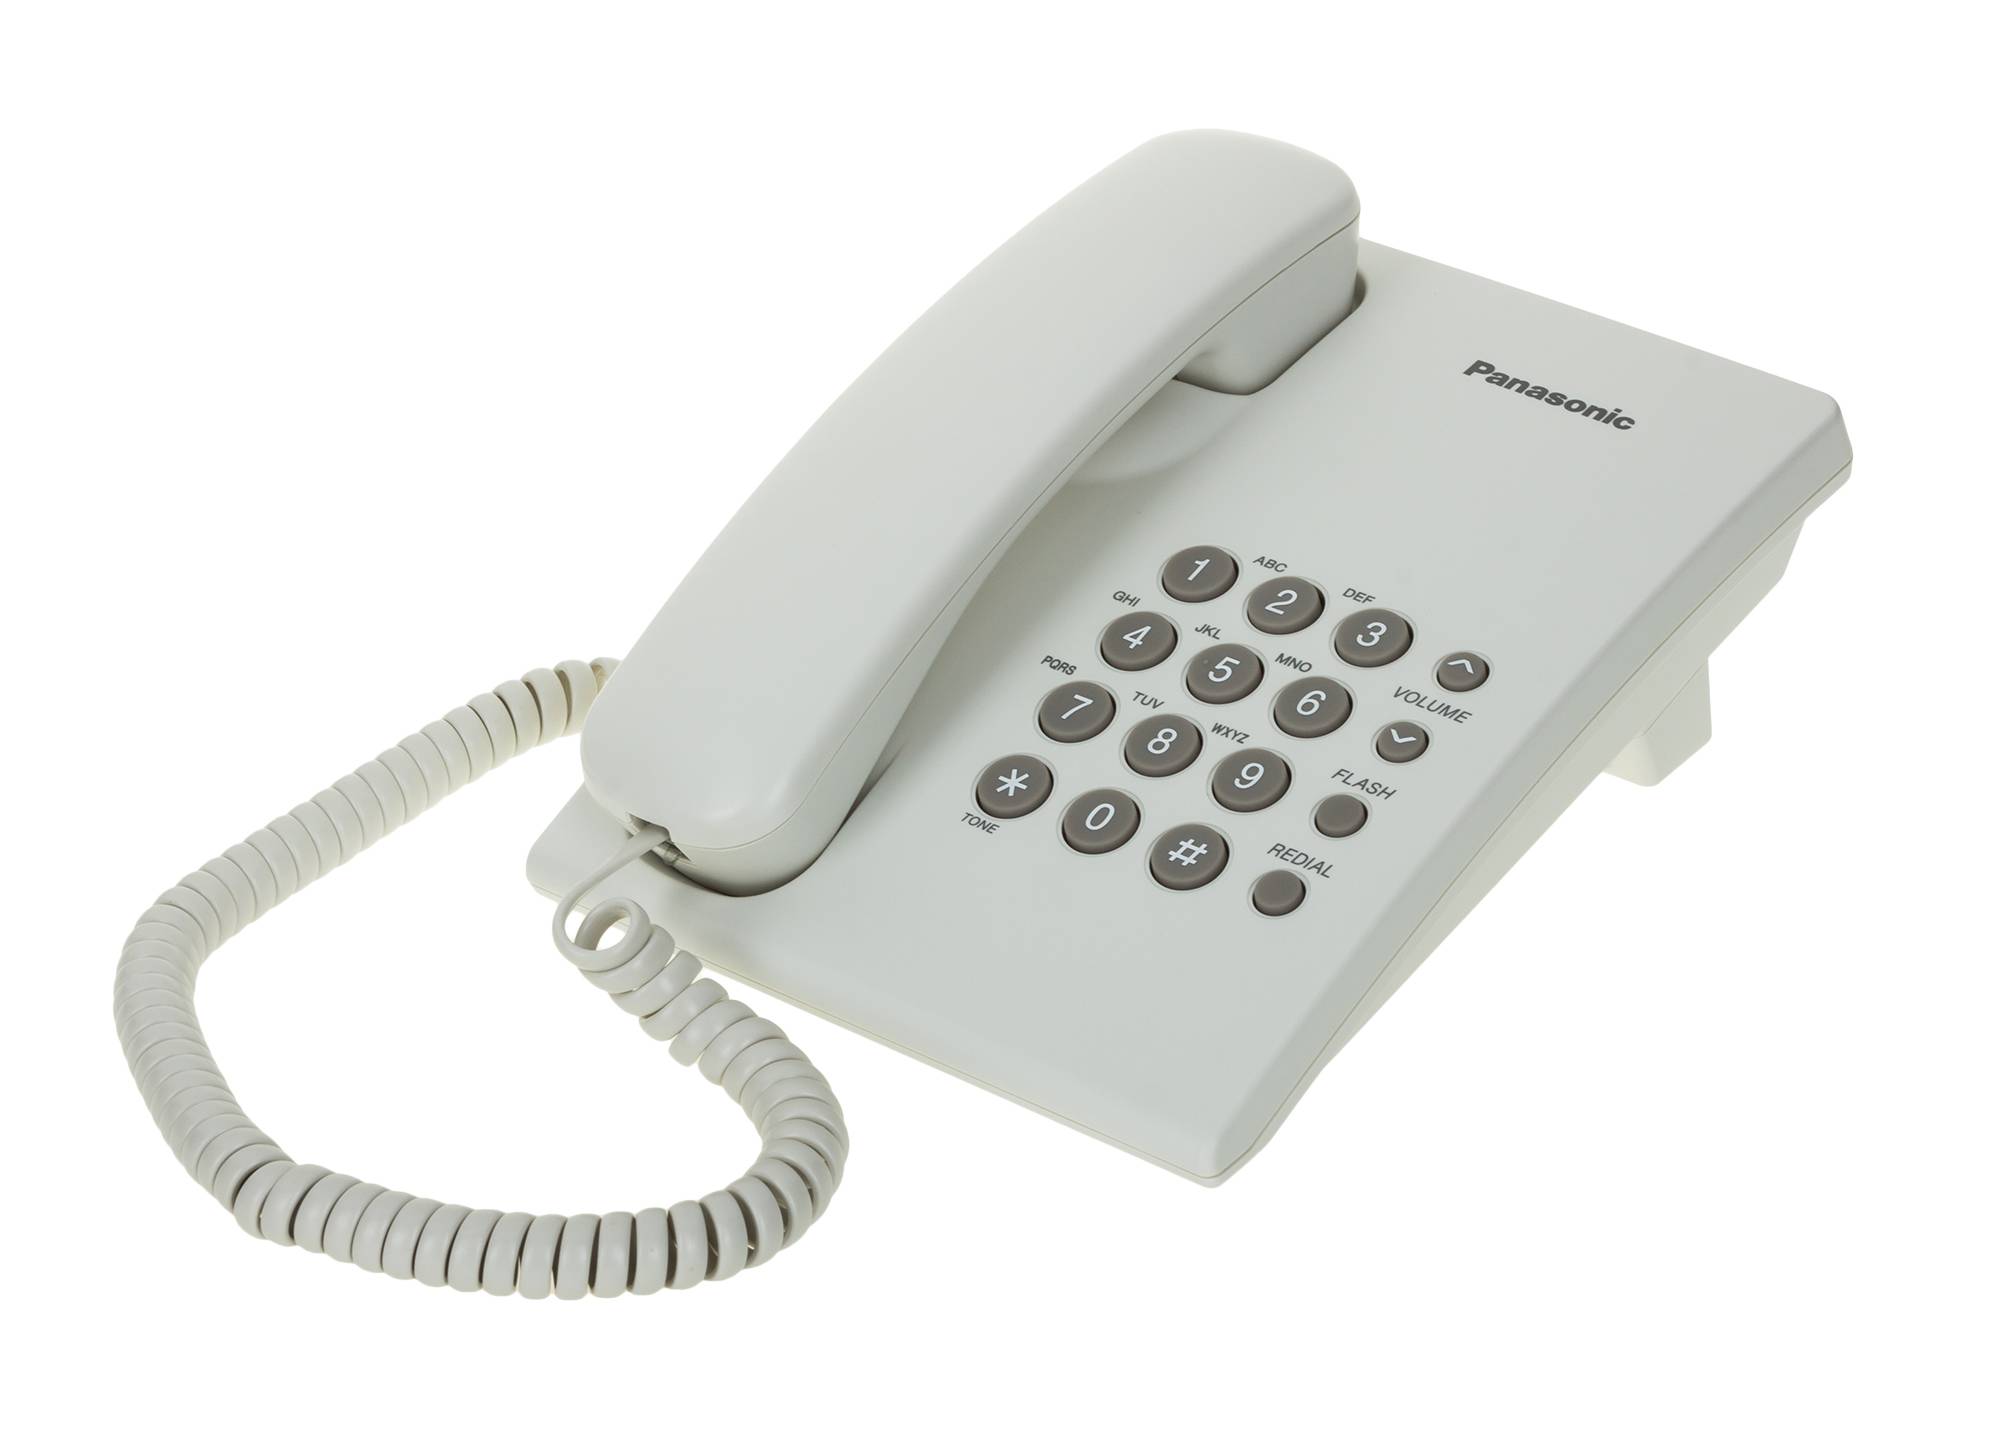 Стационарный телефон ростов. Телефон Panasonic KX-ts2350 ruw белый. Panasonic KX-ts2350ruw белый. Телефон Panasonic KX-ts2350ruw. Аппарат телефонный проводной Panasonic KX-ts2350.